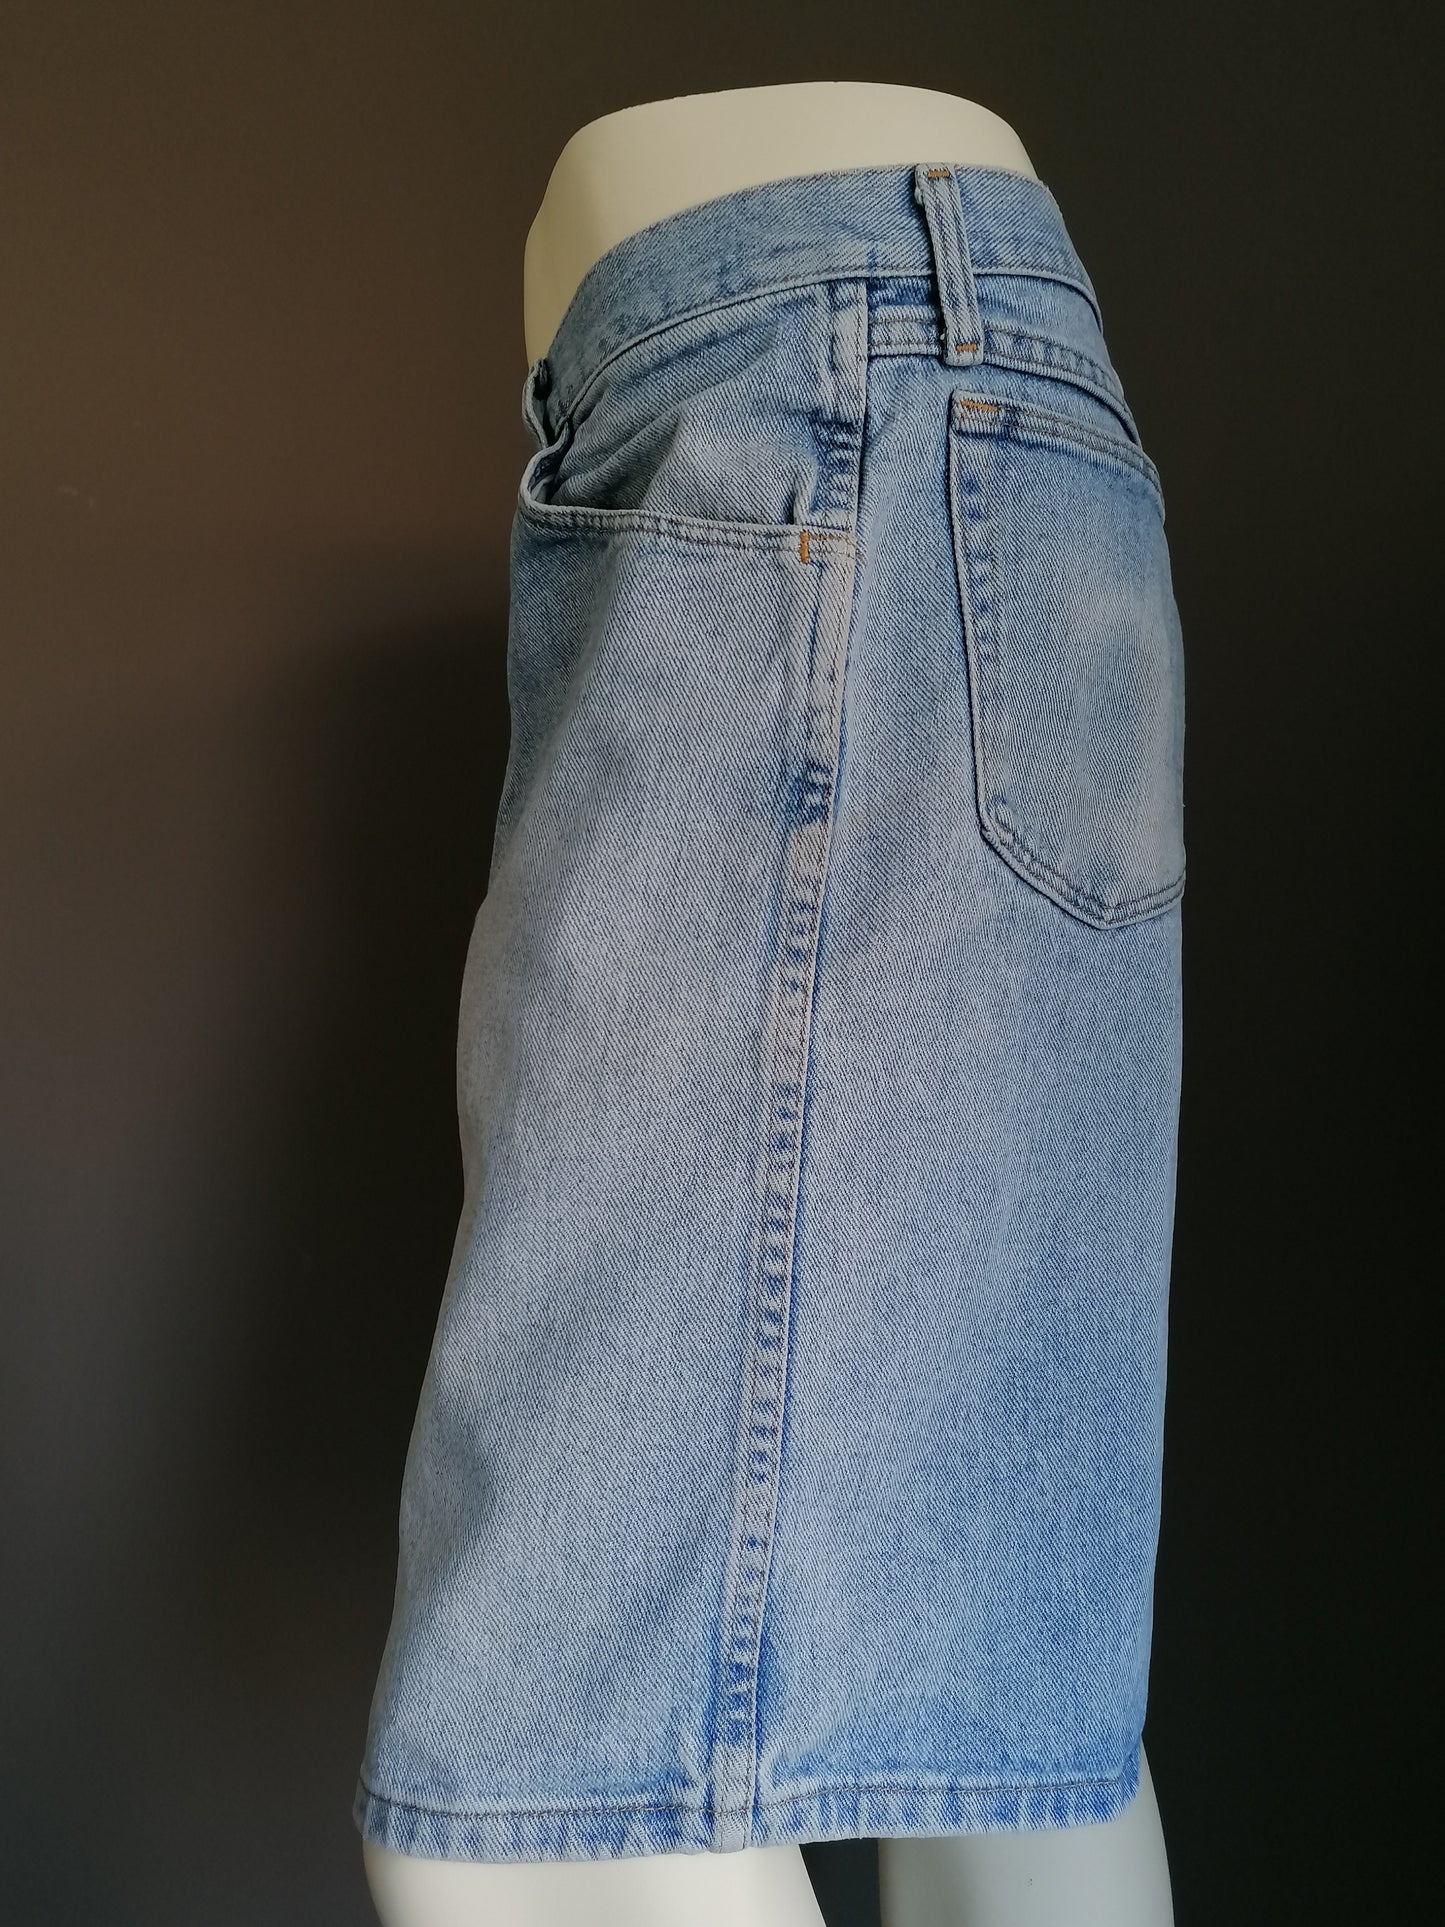 Short de jeans Wrangler. Coloré bleu clair. Taille W40.